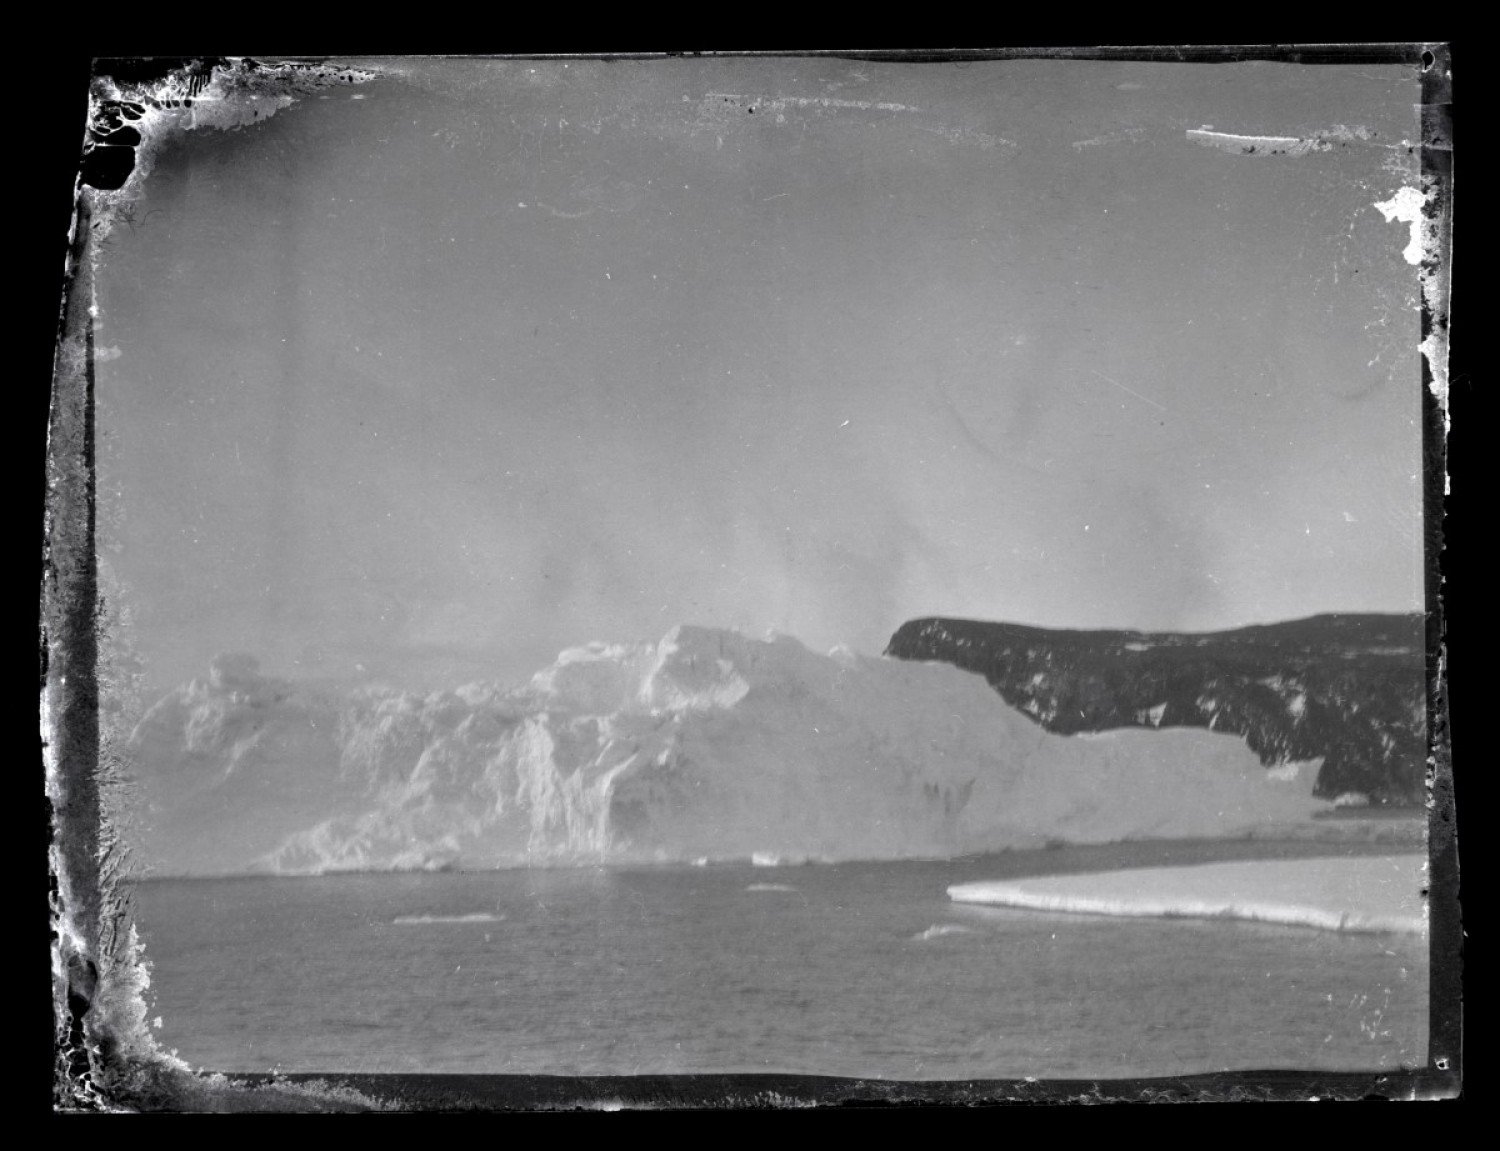 عکس هایی 100 ساله که از دل یخ های قطب جنوب زنده شد / اسناد یخ زده یک تراژدی بزرگ تاریخی